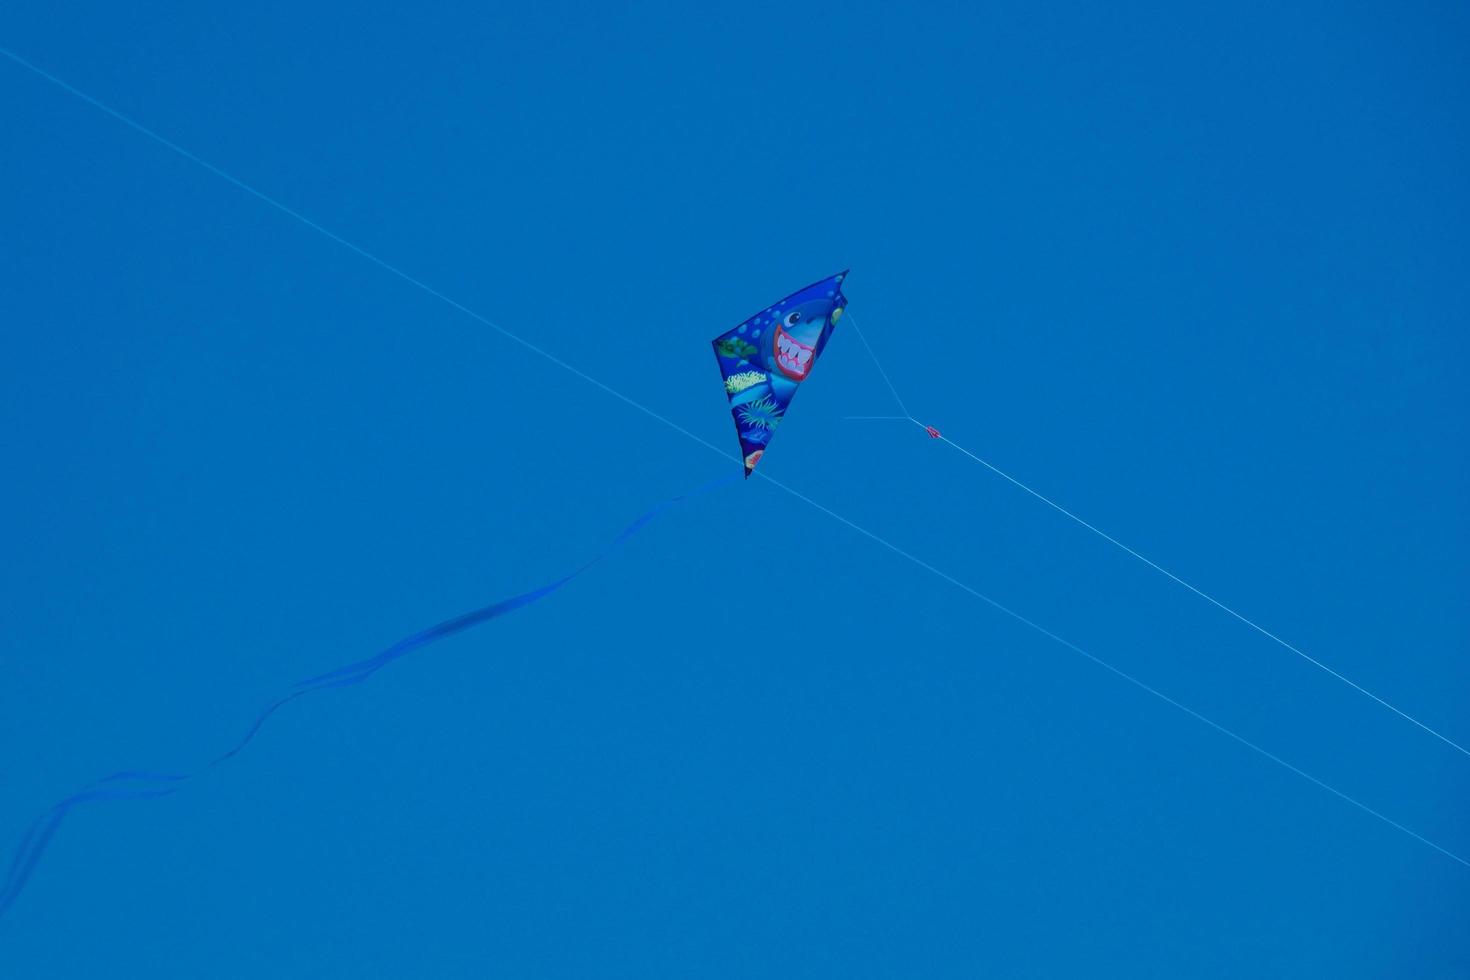 cerf-volant coloré volant sous le ciel bleu photo